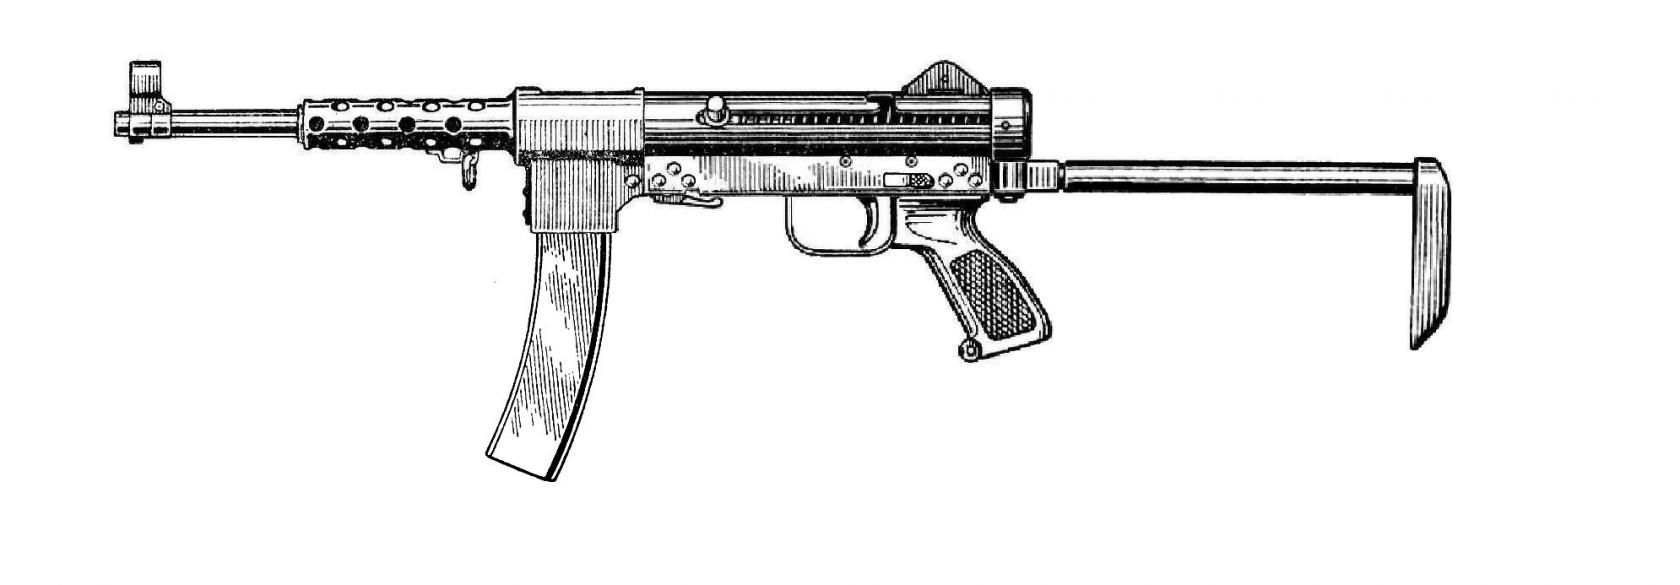 Стрелковое оружие Грузии МГК (Мир Грузинского Королевства)